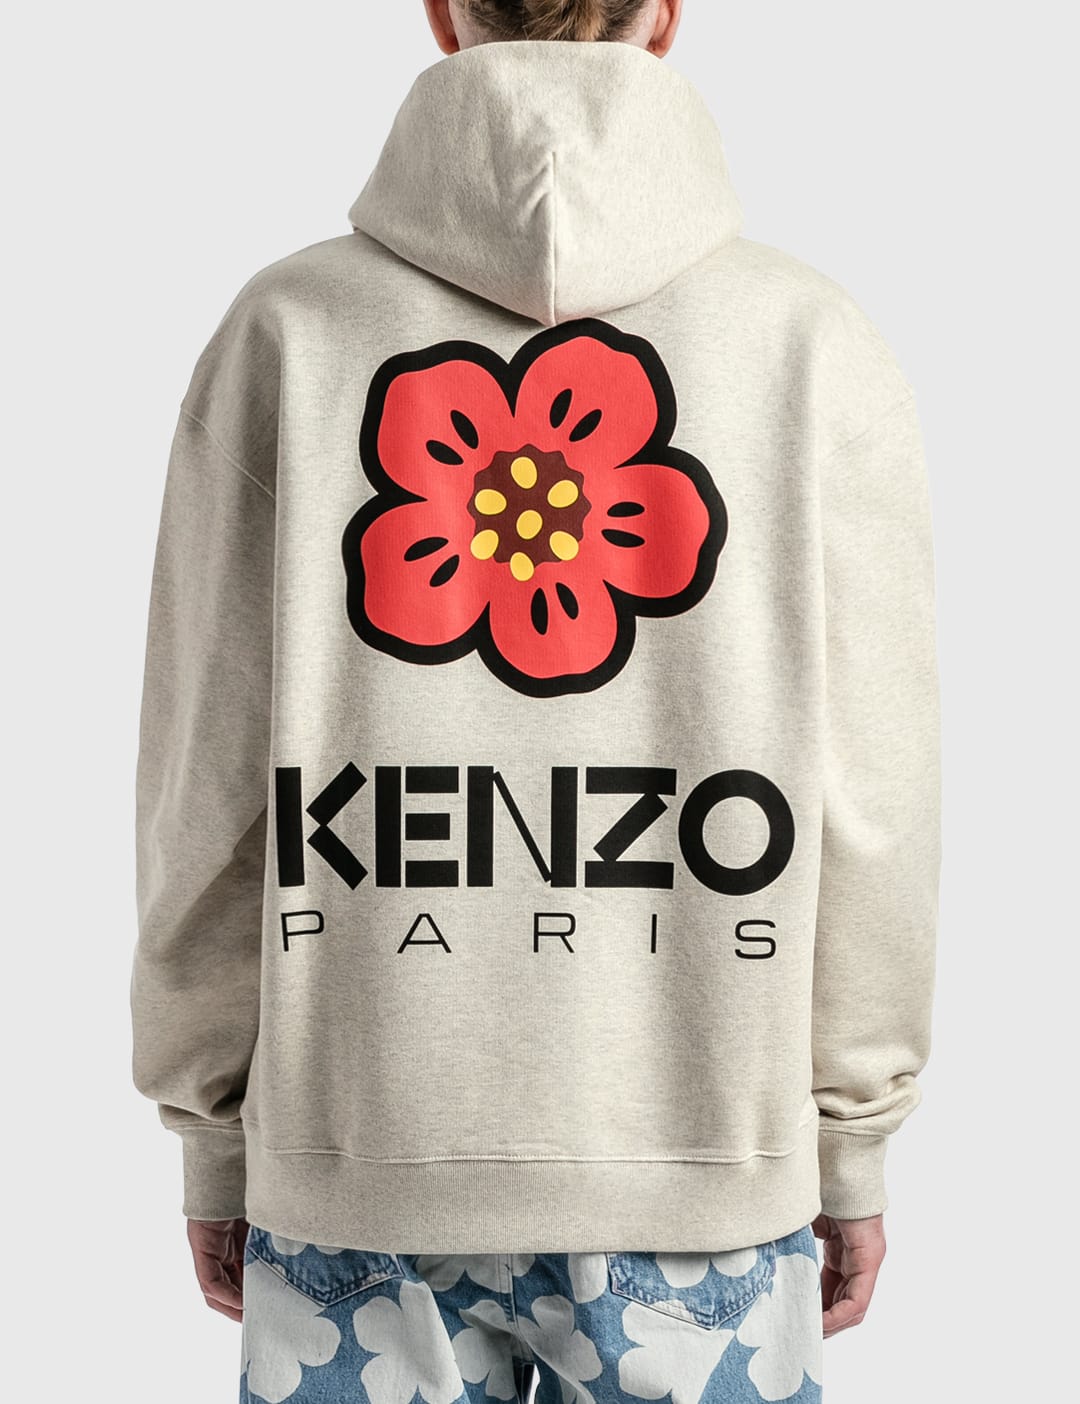 Kenzo - Boke Flower Oversized Hoodie Sweatshirt | HBX - Globally